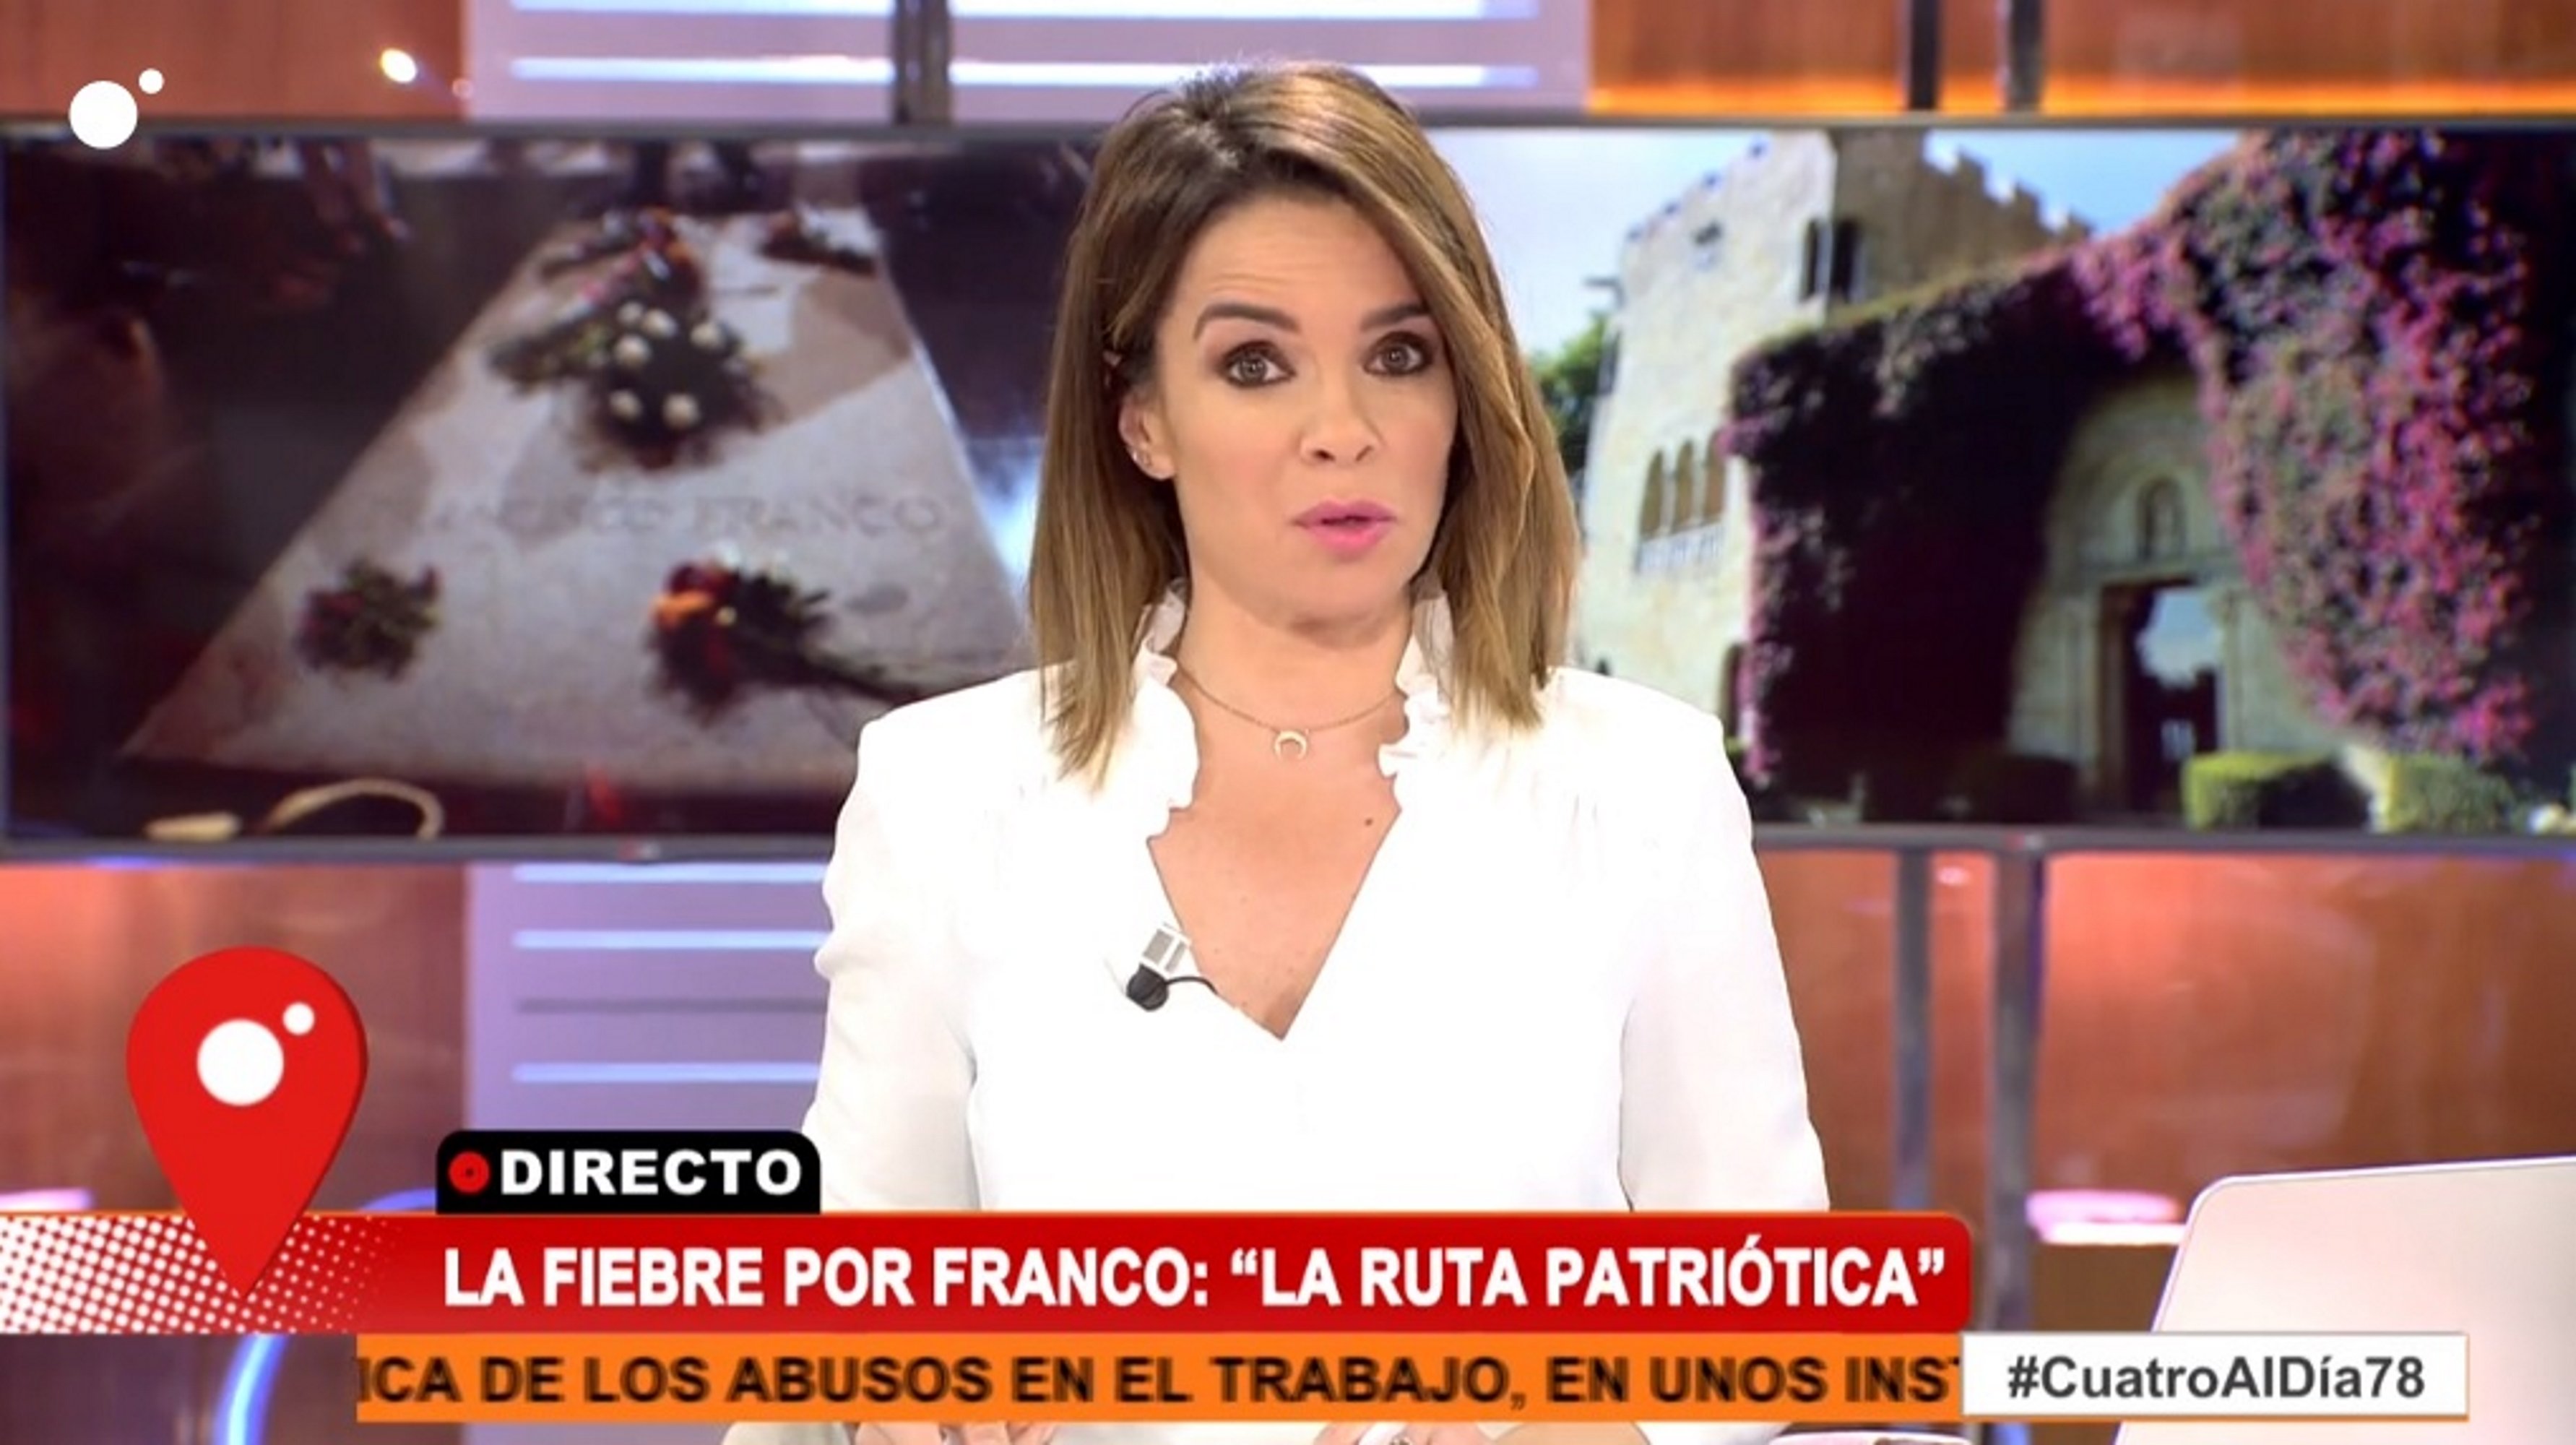 Carme Chaparro corta la entrevista con el franquista que grita “rojos de mierd...”